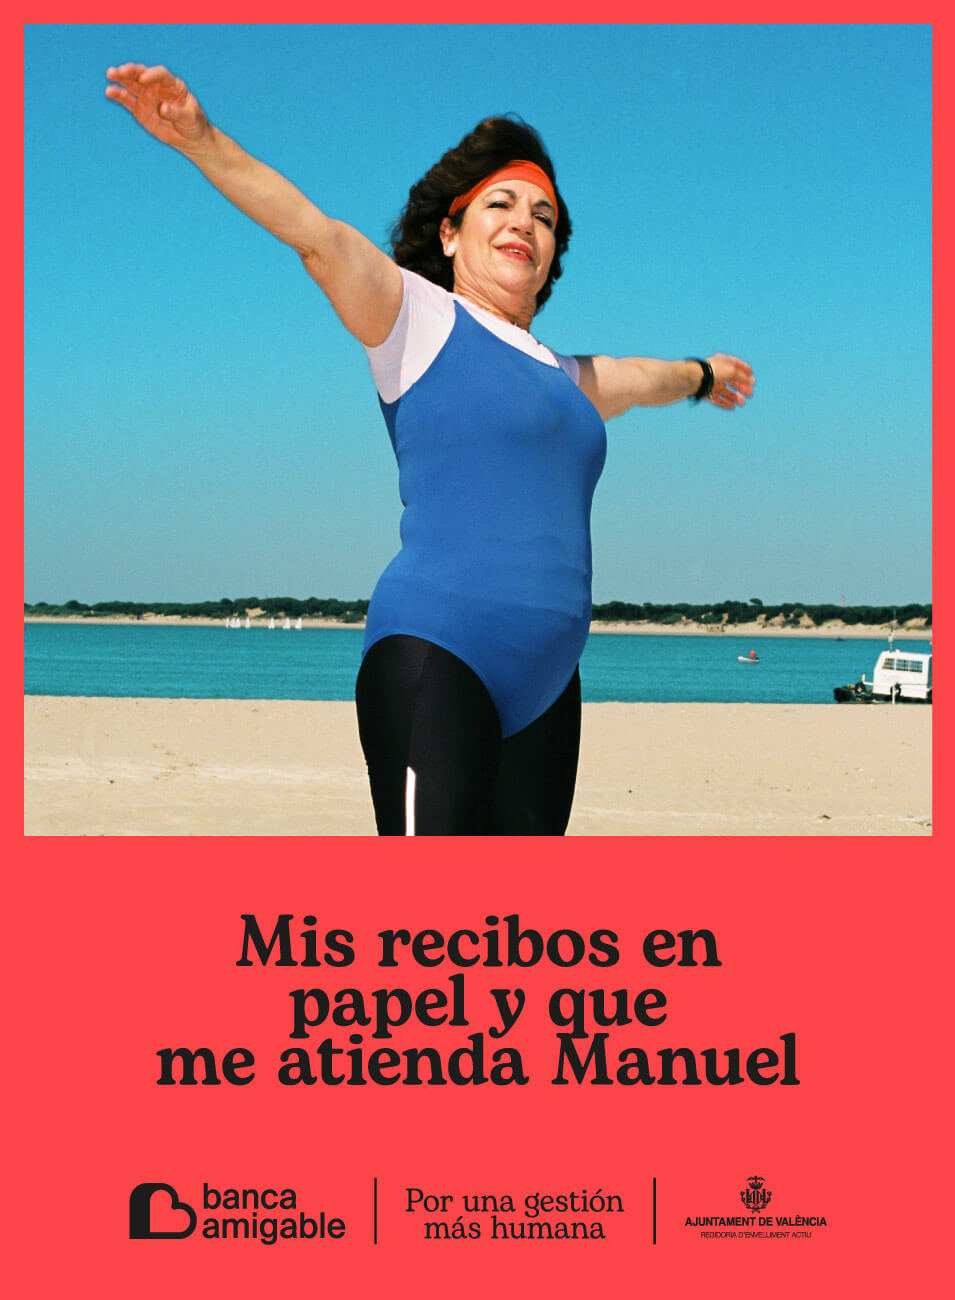 Cartel de una señora haciendo gimnasia en la playa con la leyenda: Mis recibos en papel y que me atienda Manuel